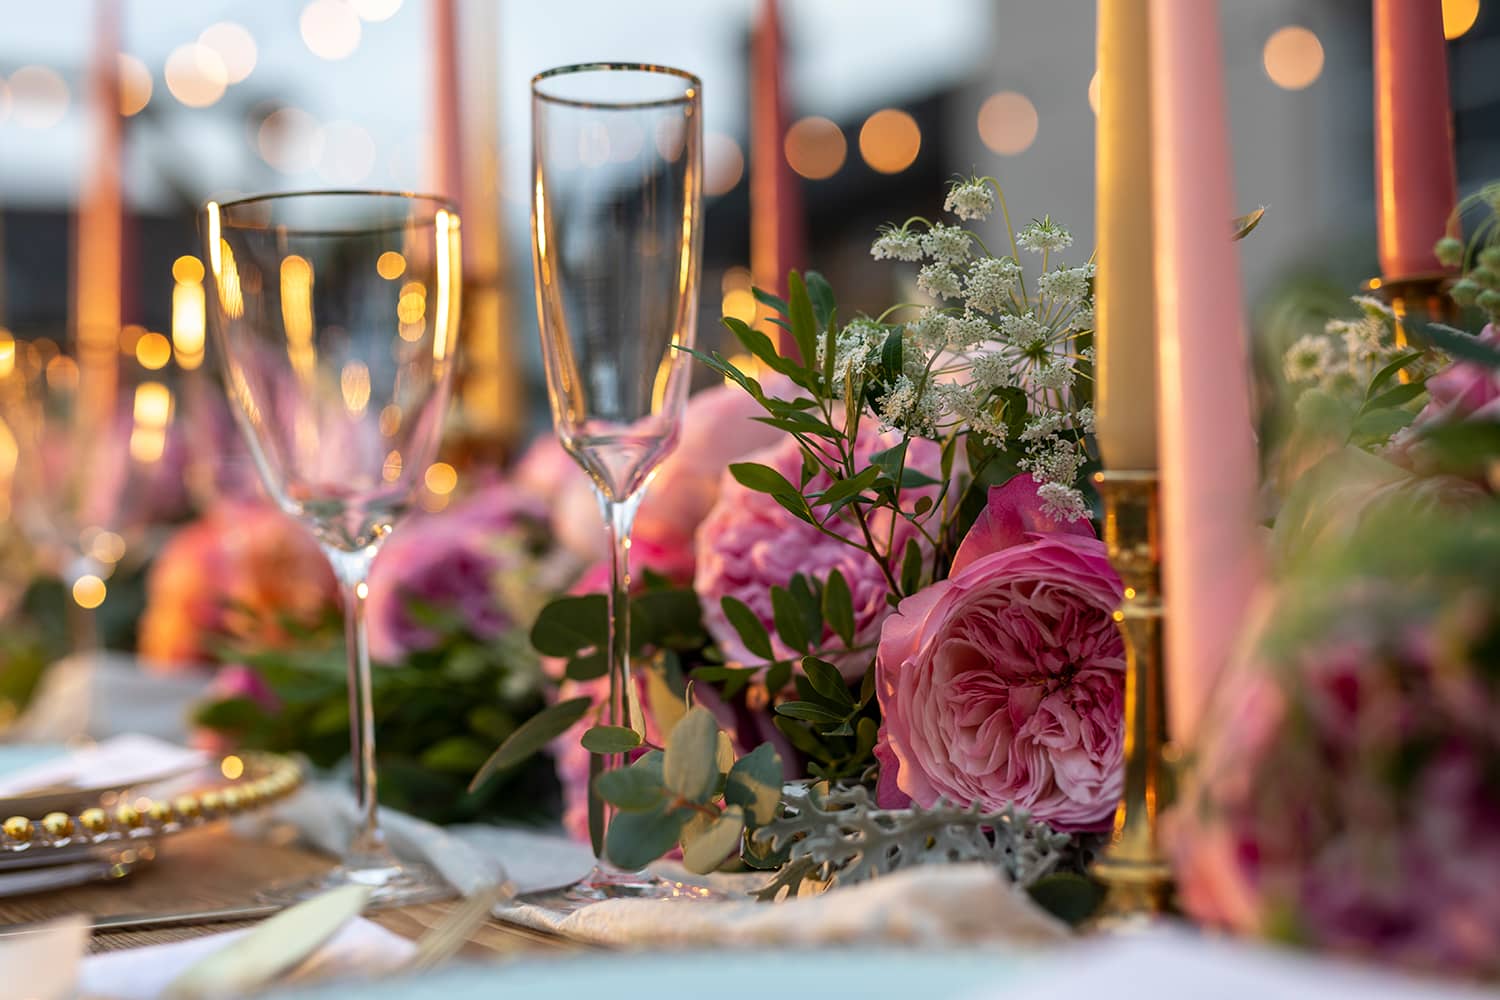 Constance rose banchetto decorazioni per la tavola di nozze